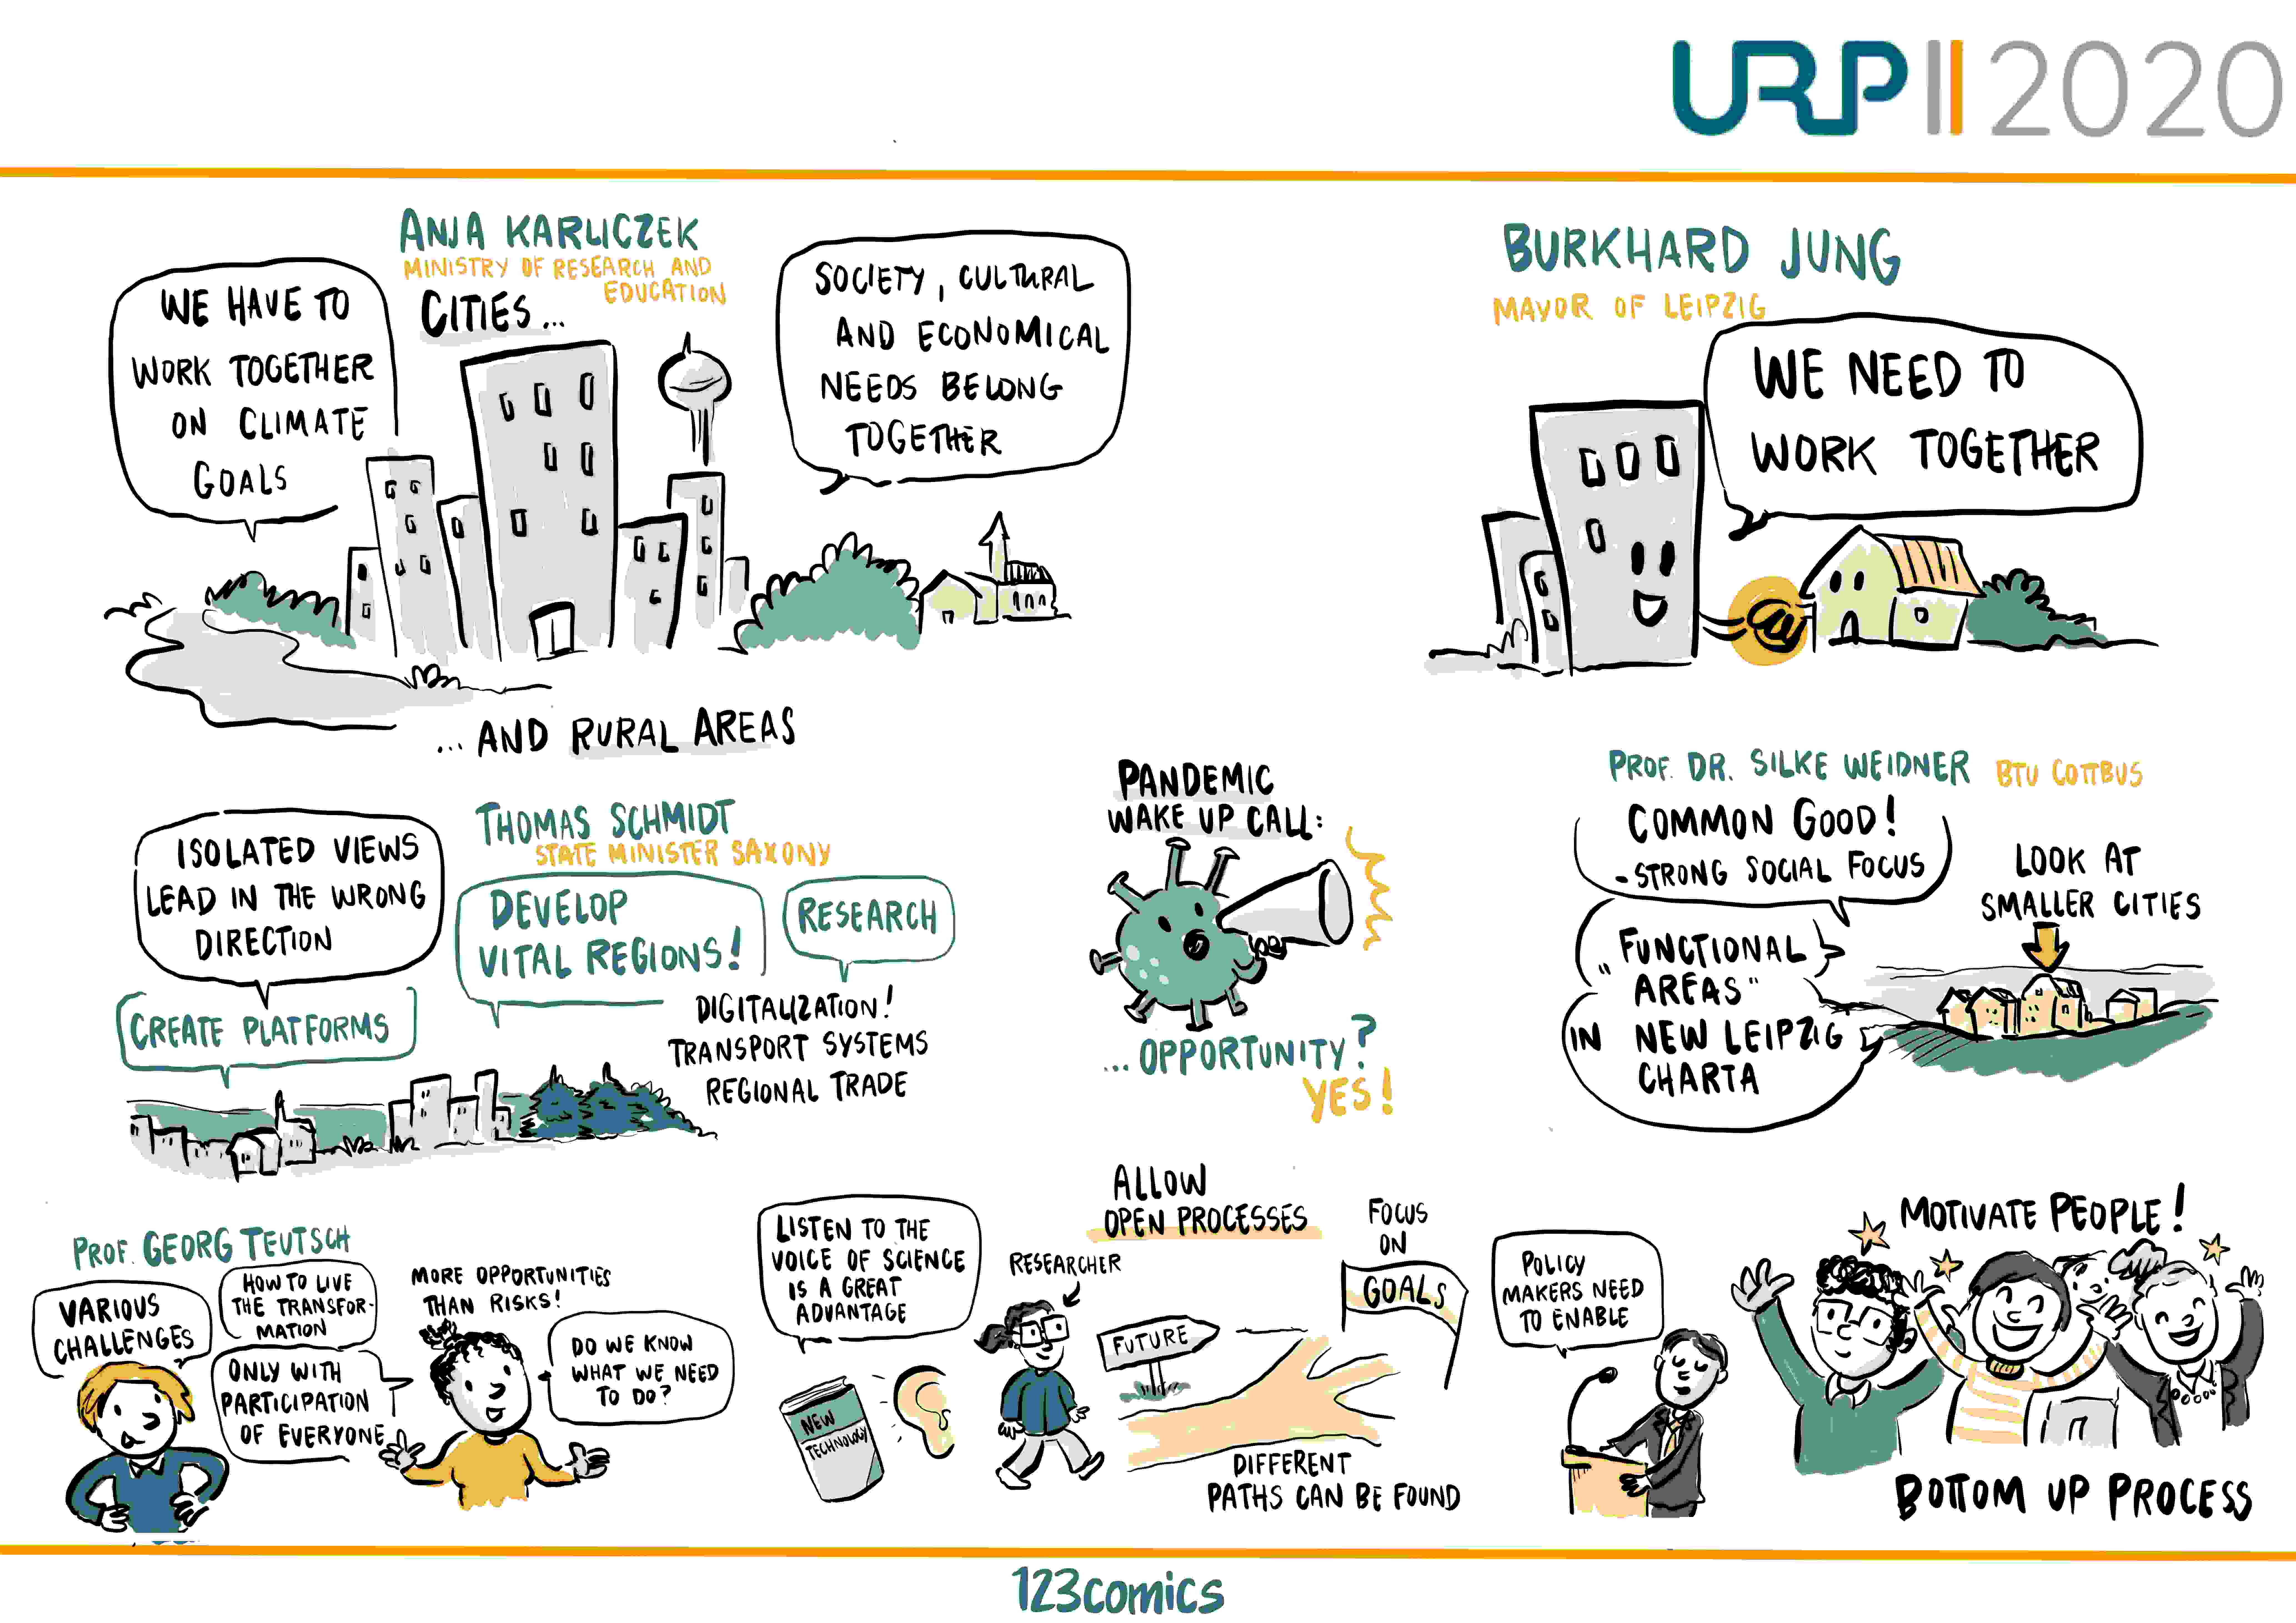 Graphic Recording der URP2020 Eröffnungsfeier